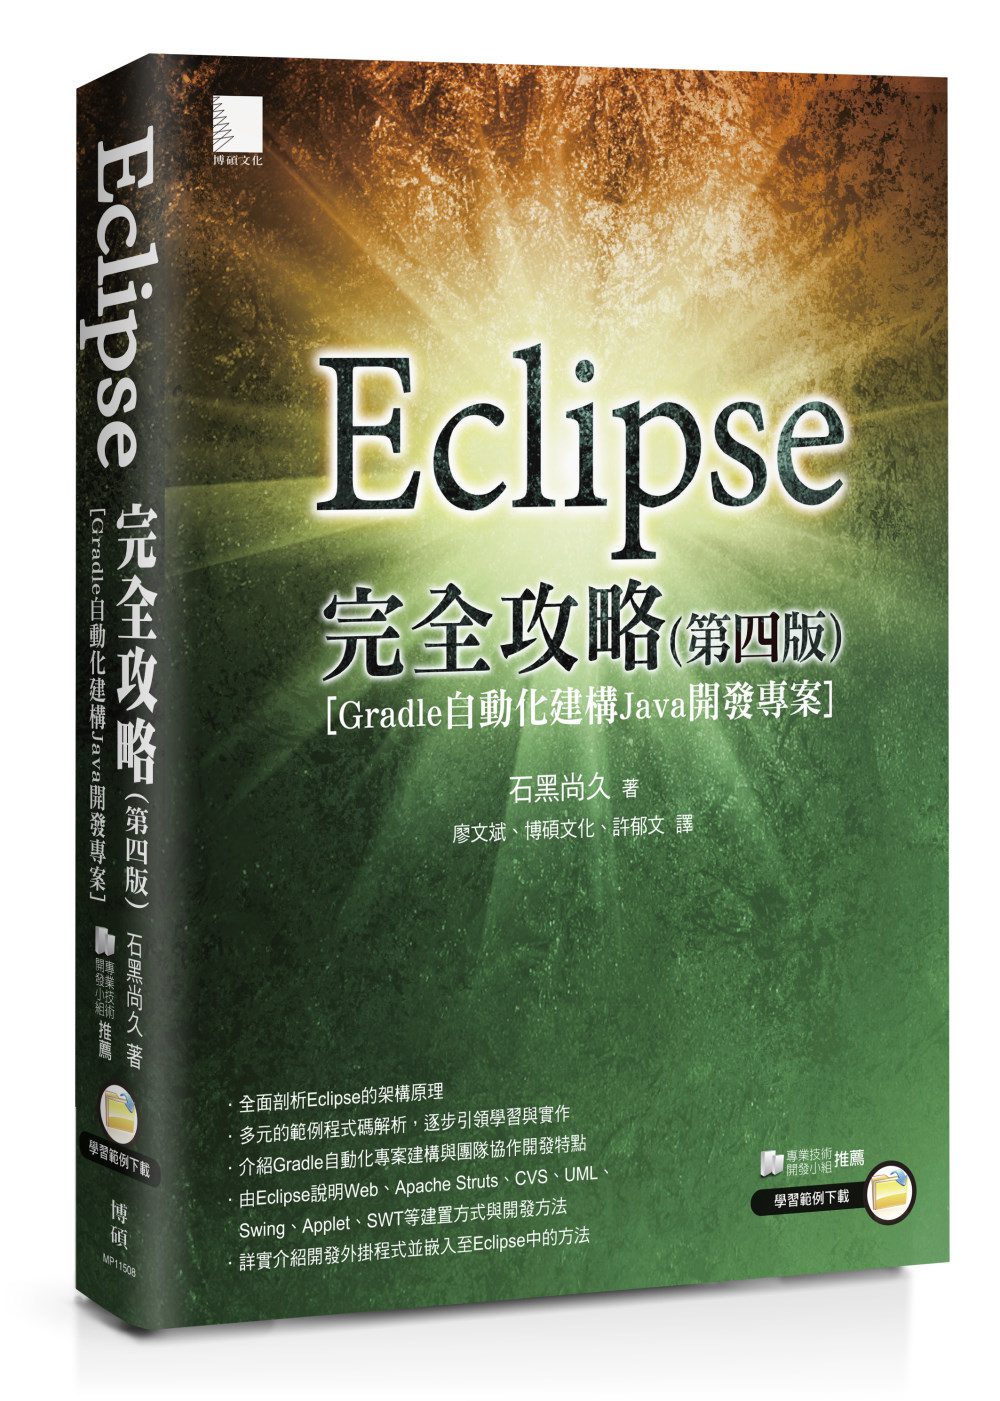 Eclipse完全攻略(第四版)[Gradle自動化建構Java開發專案]